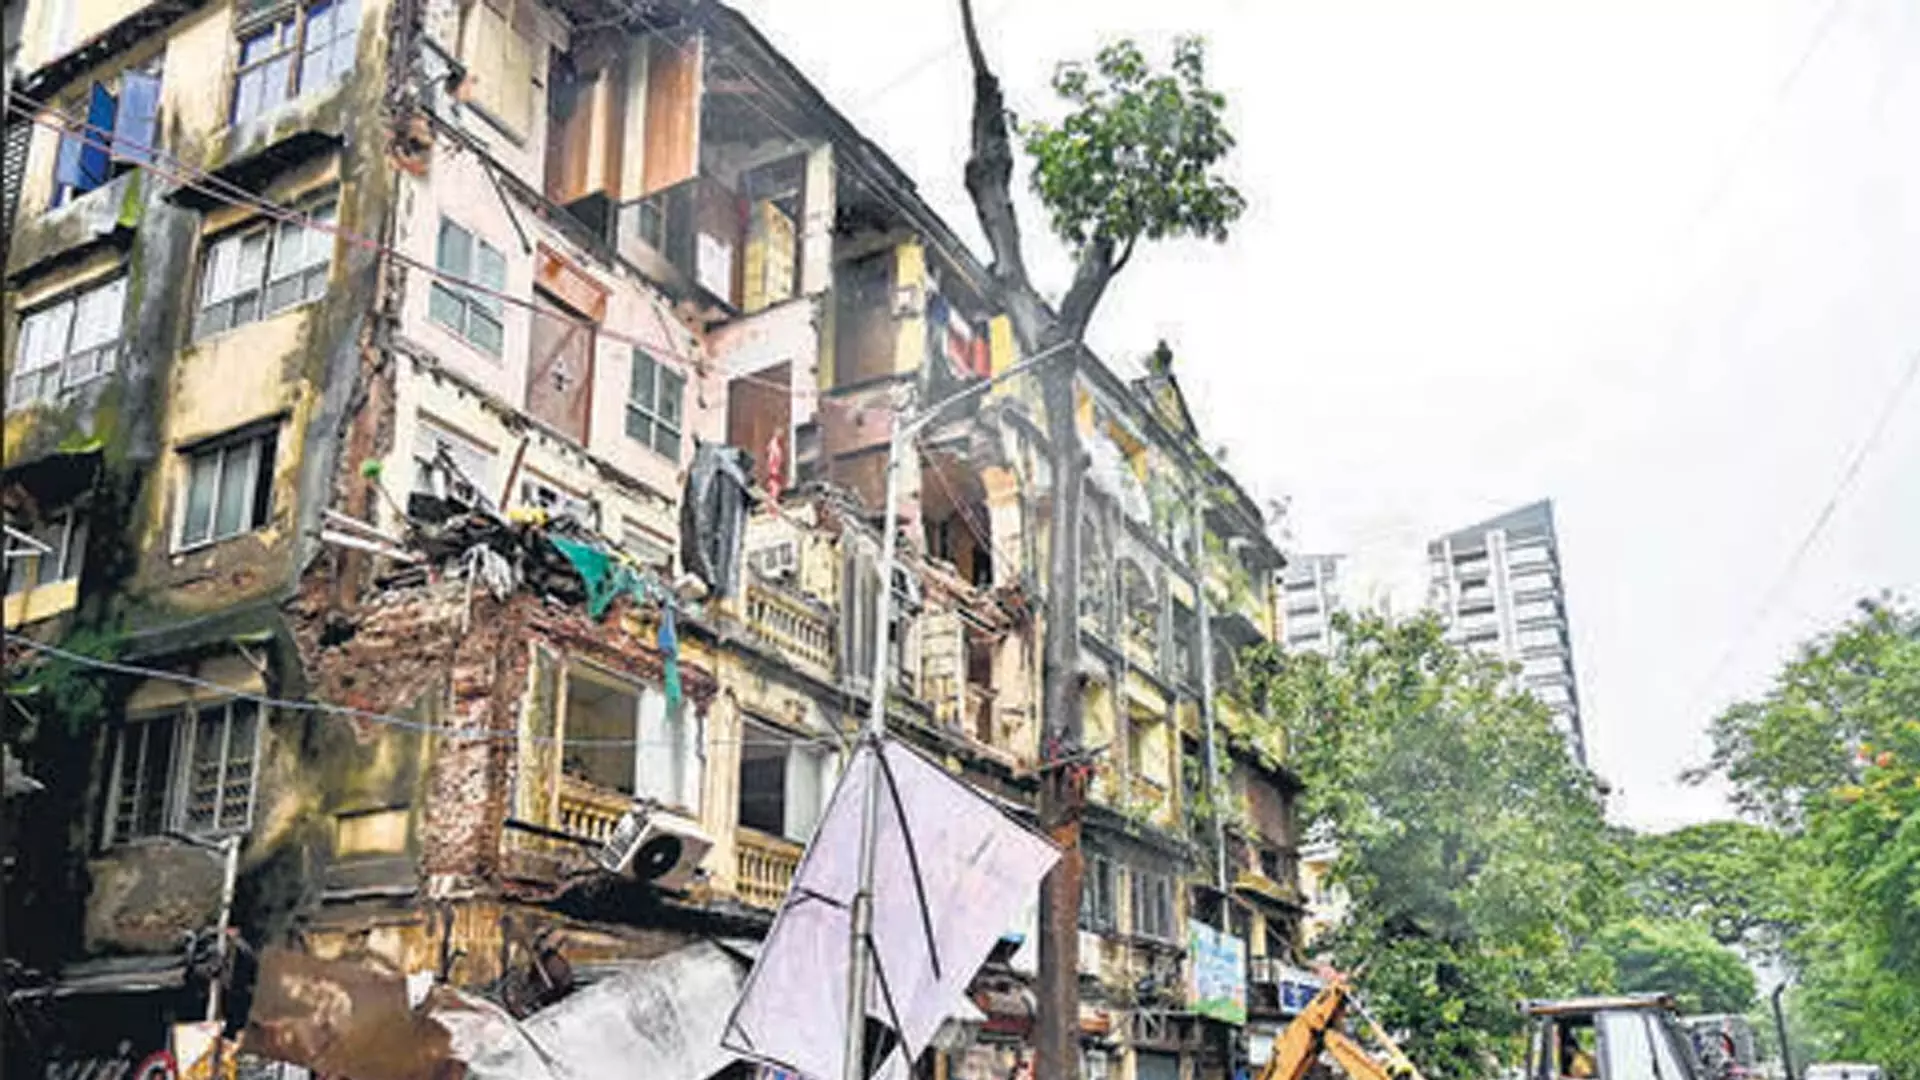 MUMBAI: ग्रांट रोड पर करीब 100 साल पुरानी इमारत का एक हिस्सा गिरने से 1 व्यक्ति की मौत, 4 घायल